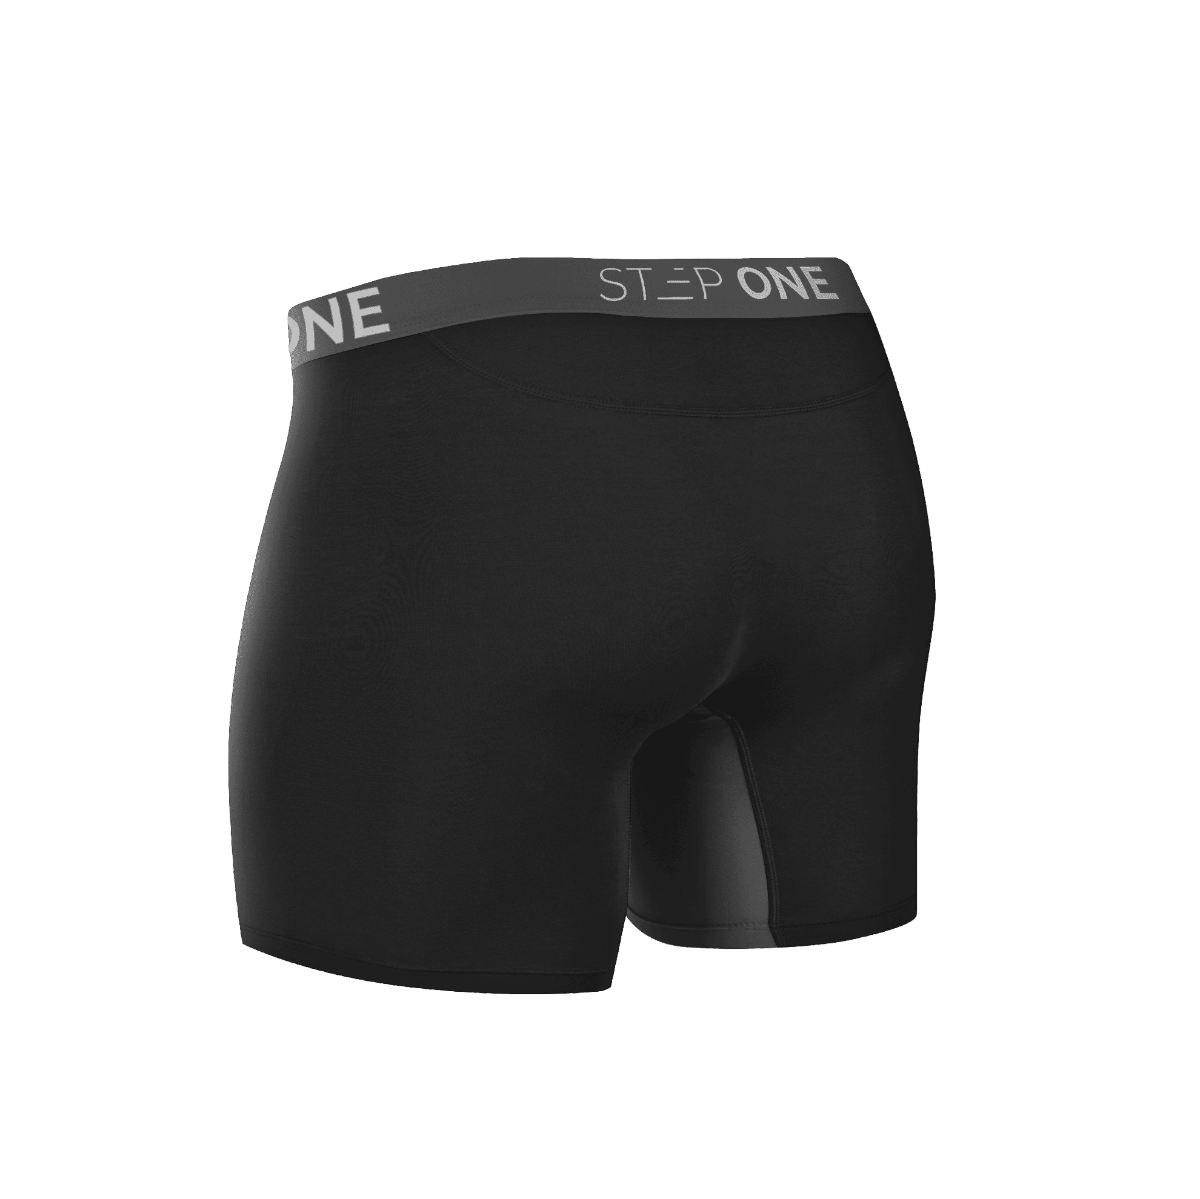 Buy Men's Underwear Online